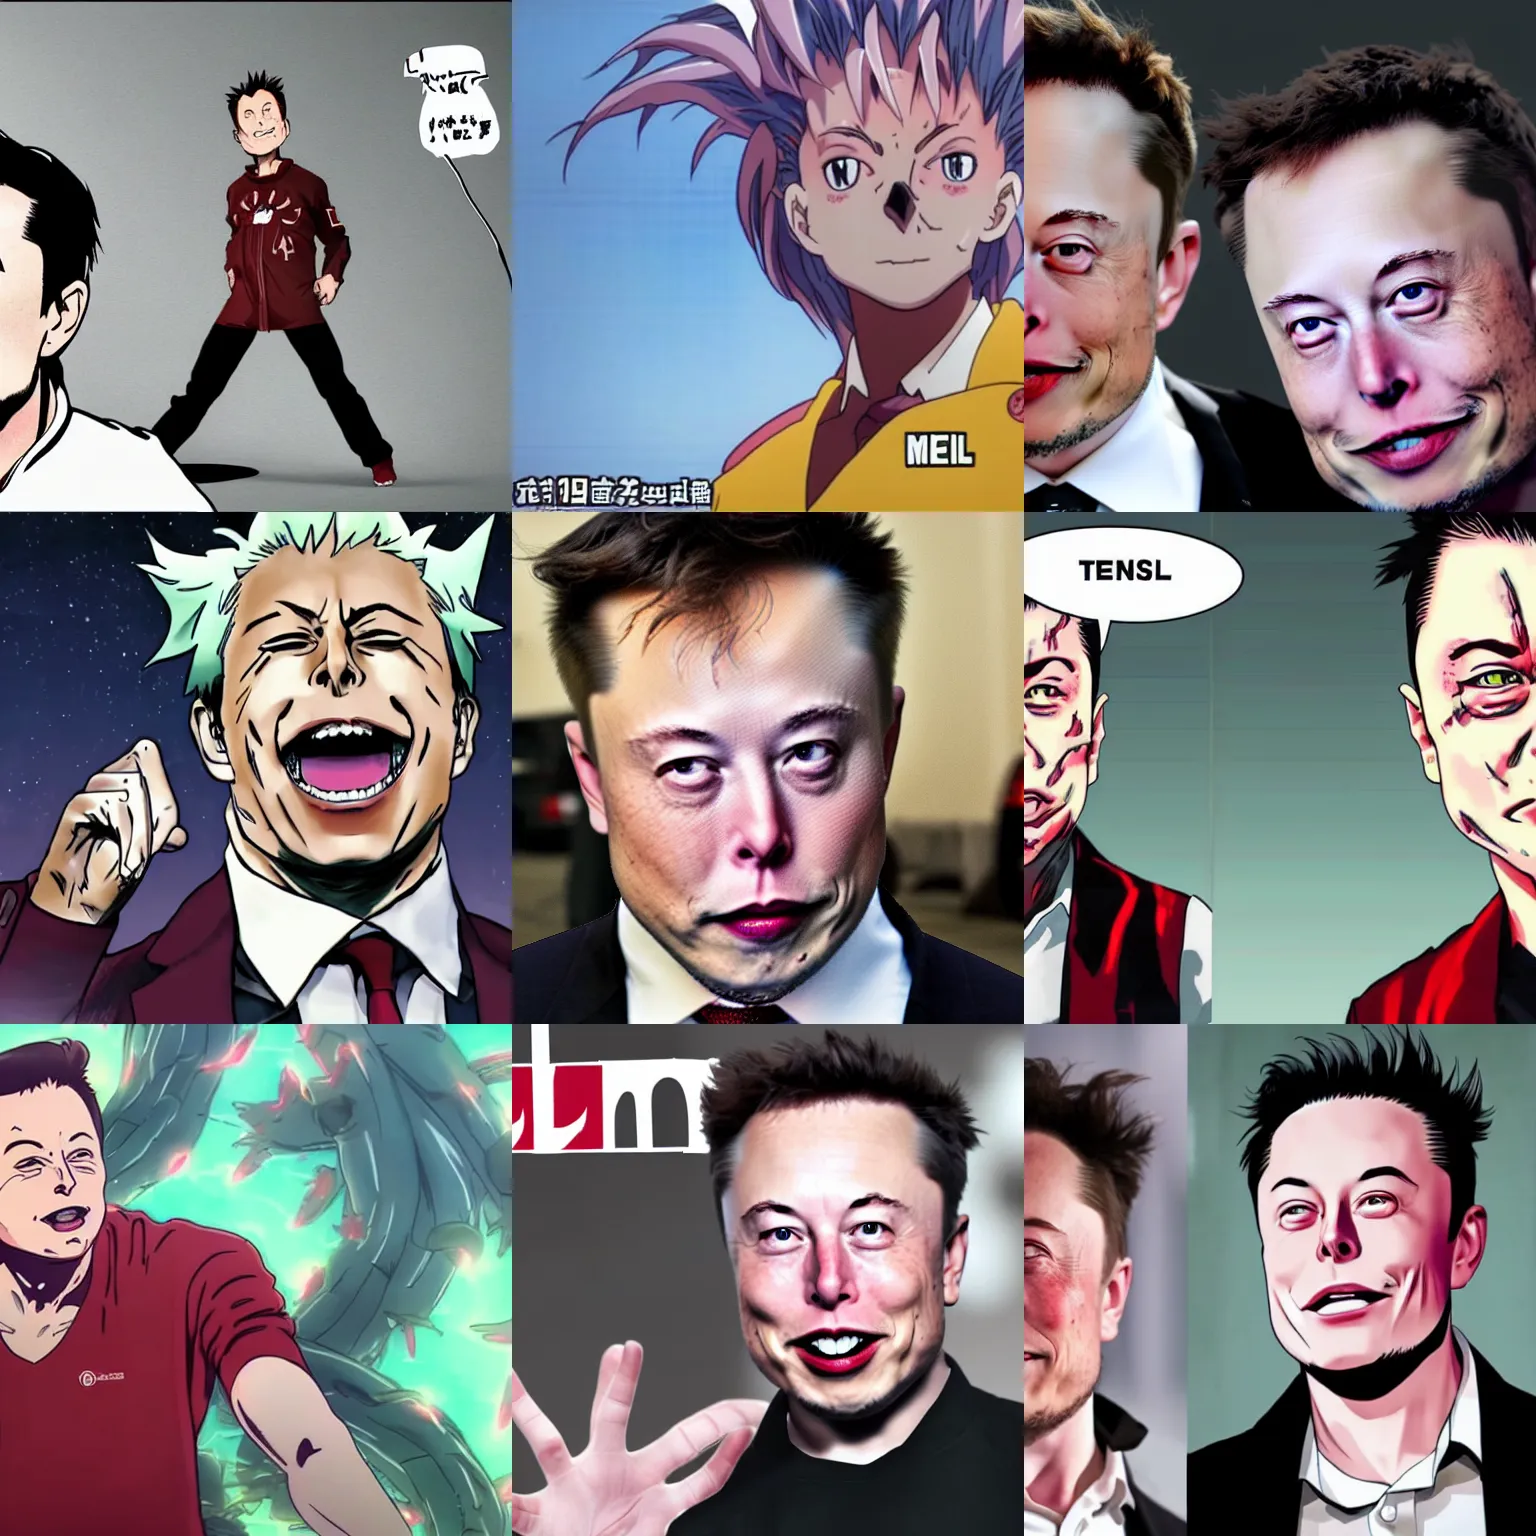 Prompt: Elon musk anime or mange, final form transformation scene